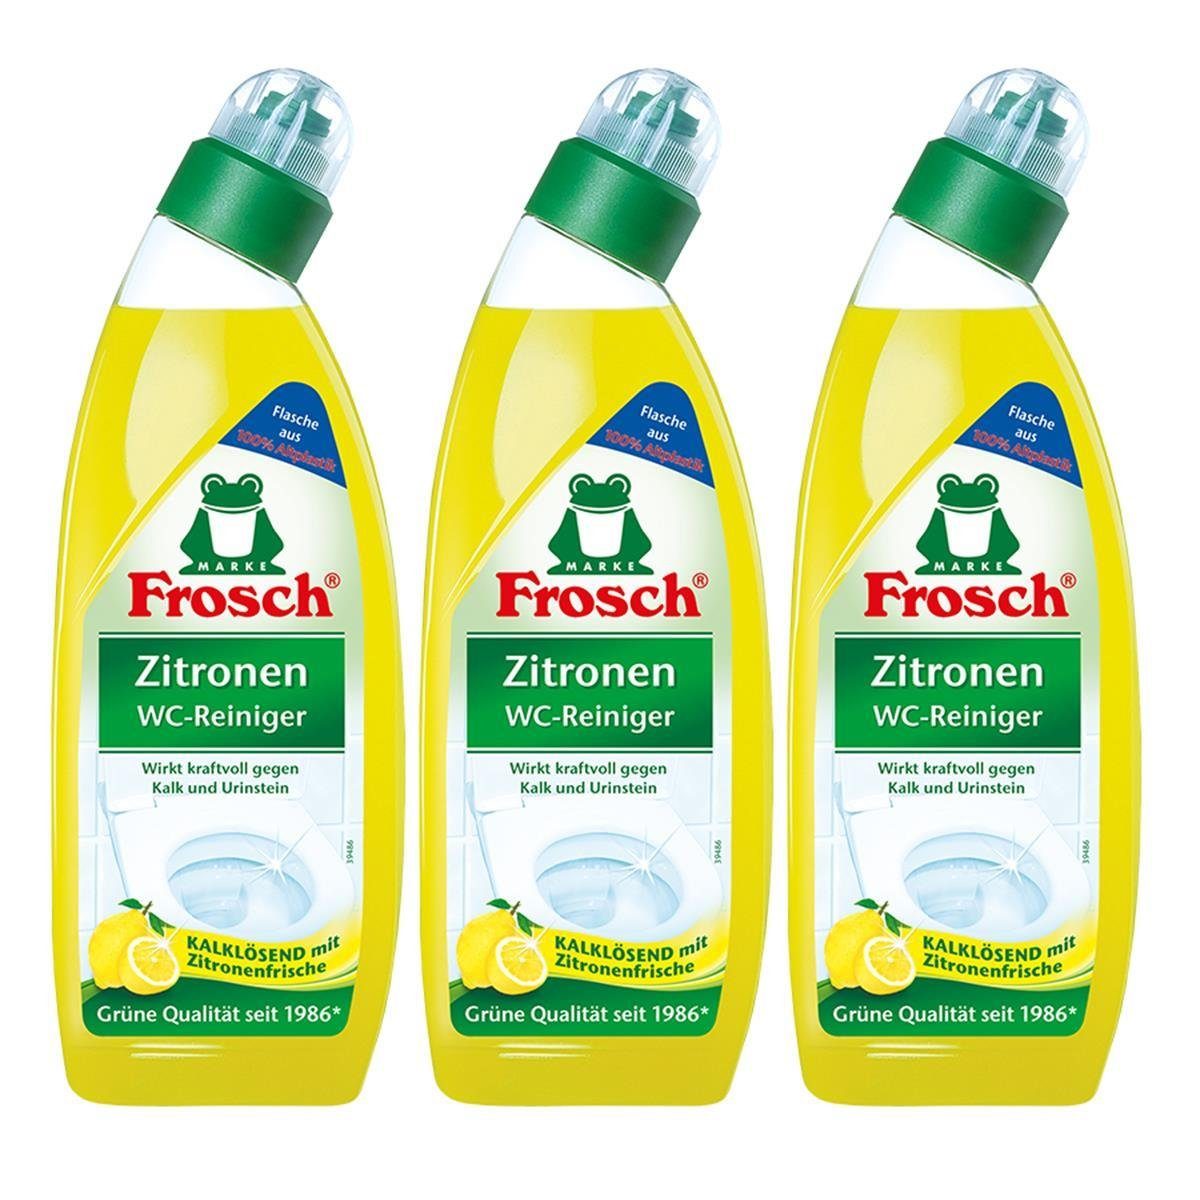 FROSCH 3x Frosch Zitronen WC-Reiniger 750 ml - Kalklösend mit Zitrone WC-Reiniger